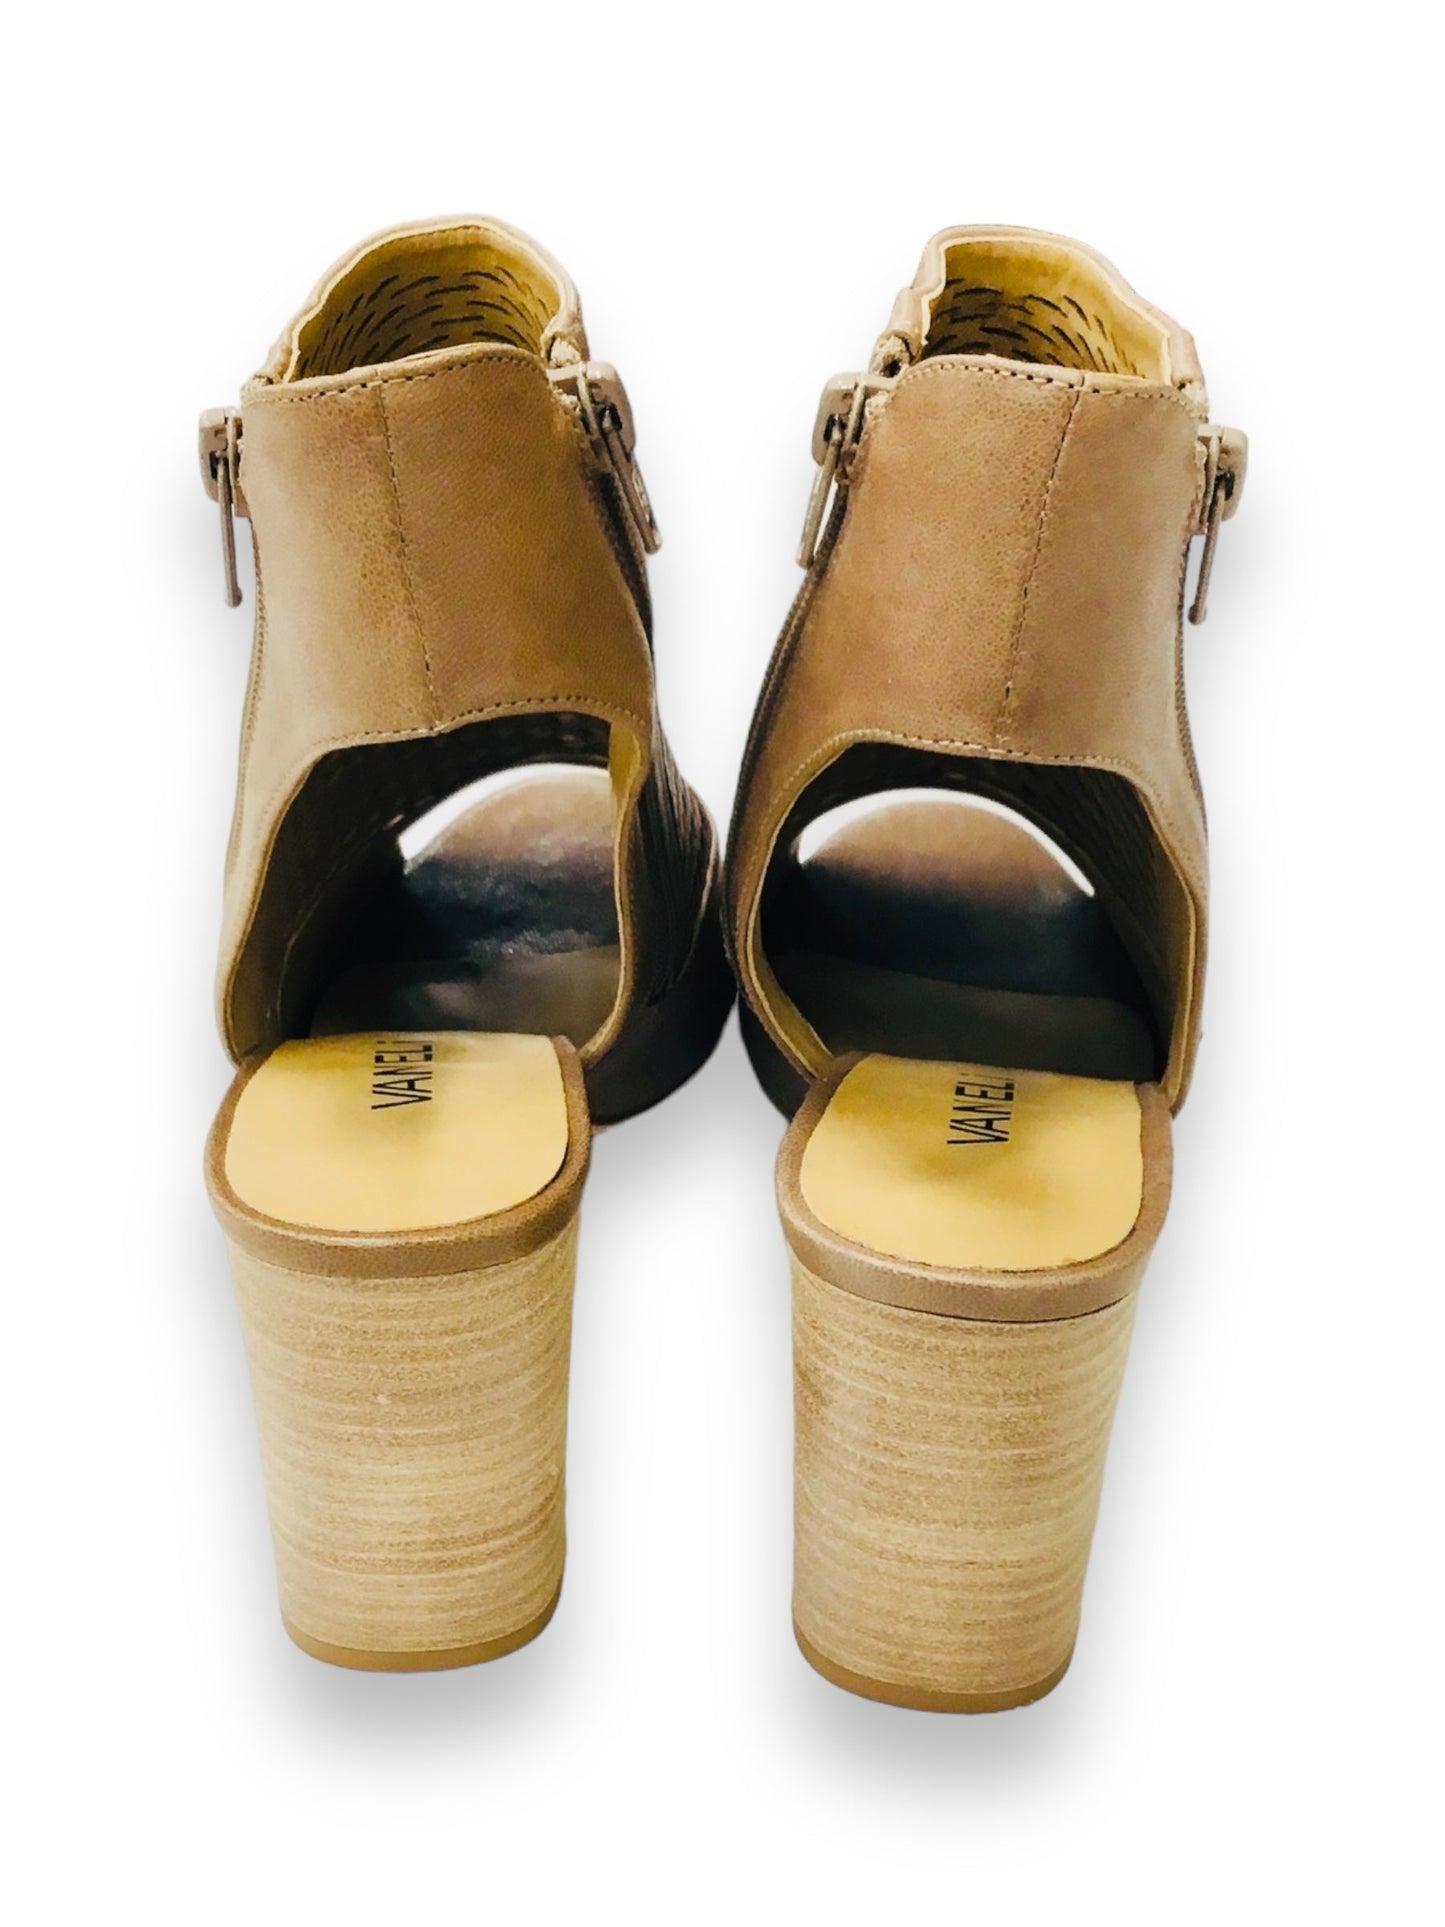 Brown Shoes Heels Block Vaneli, Size 10.5